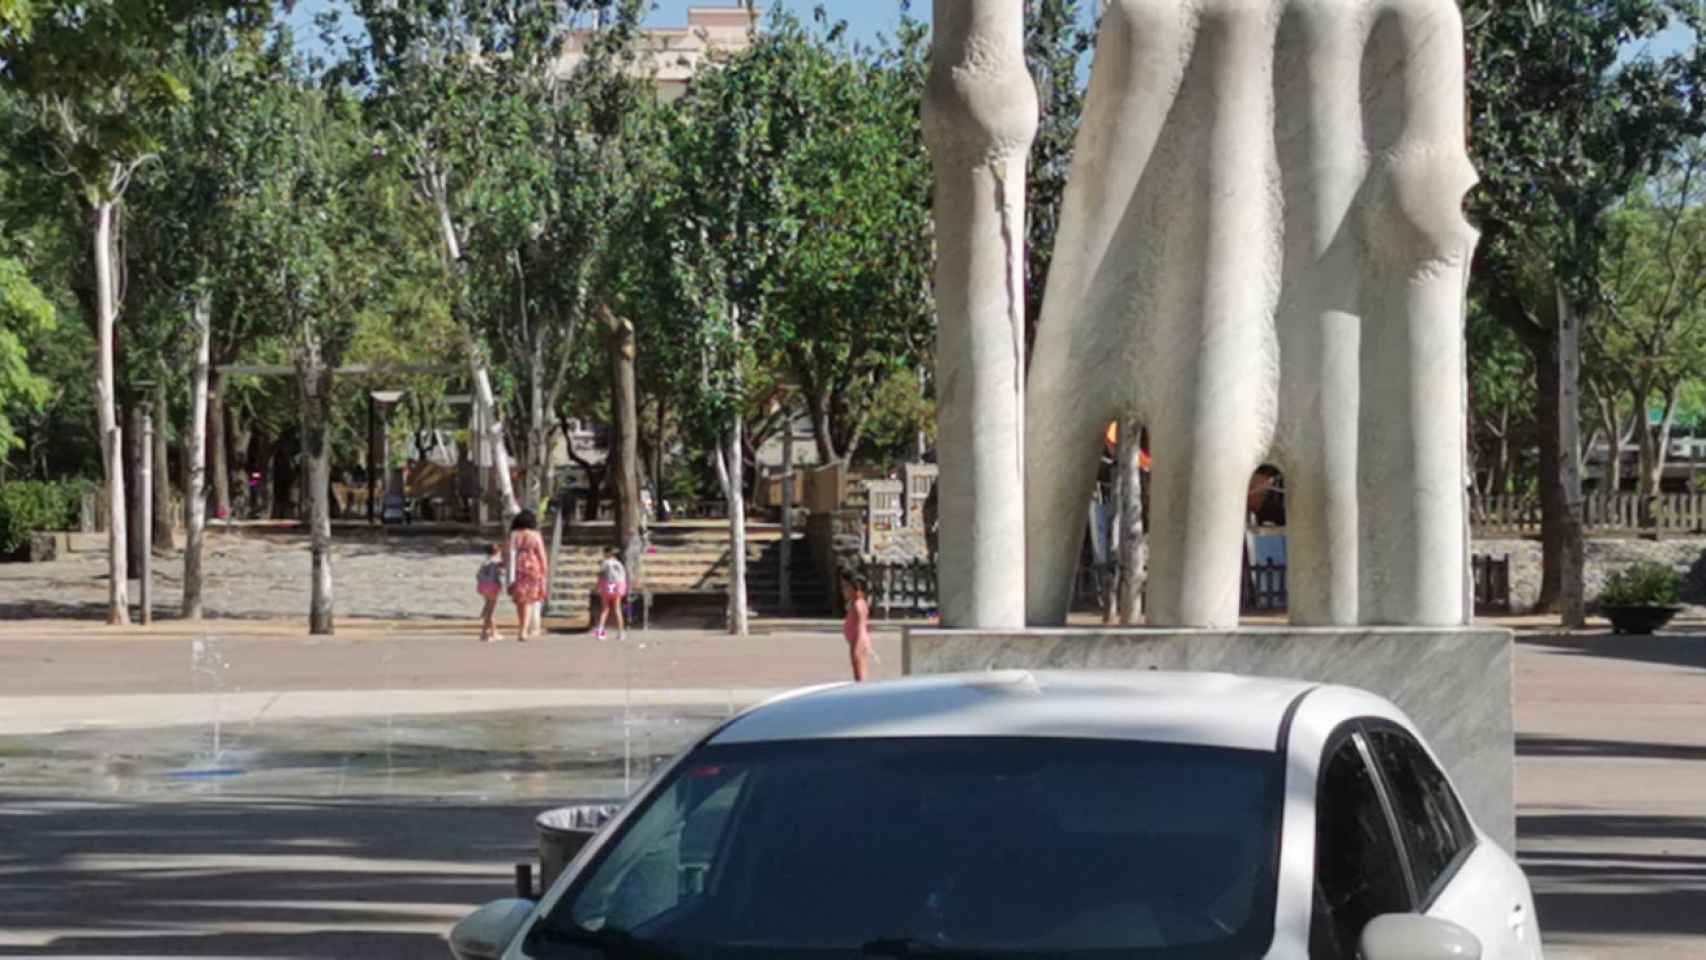 Juegos infantiles con chorros de agua en el Prat